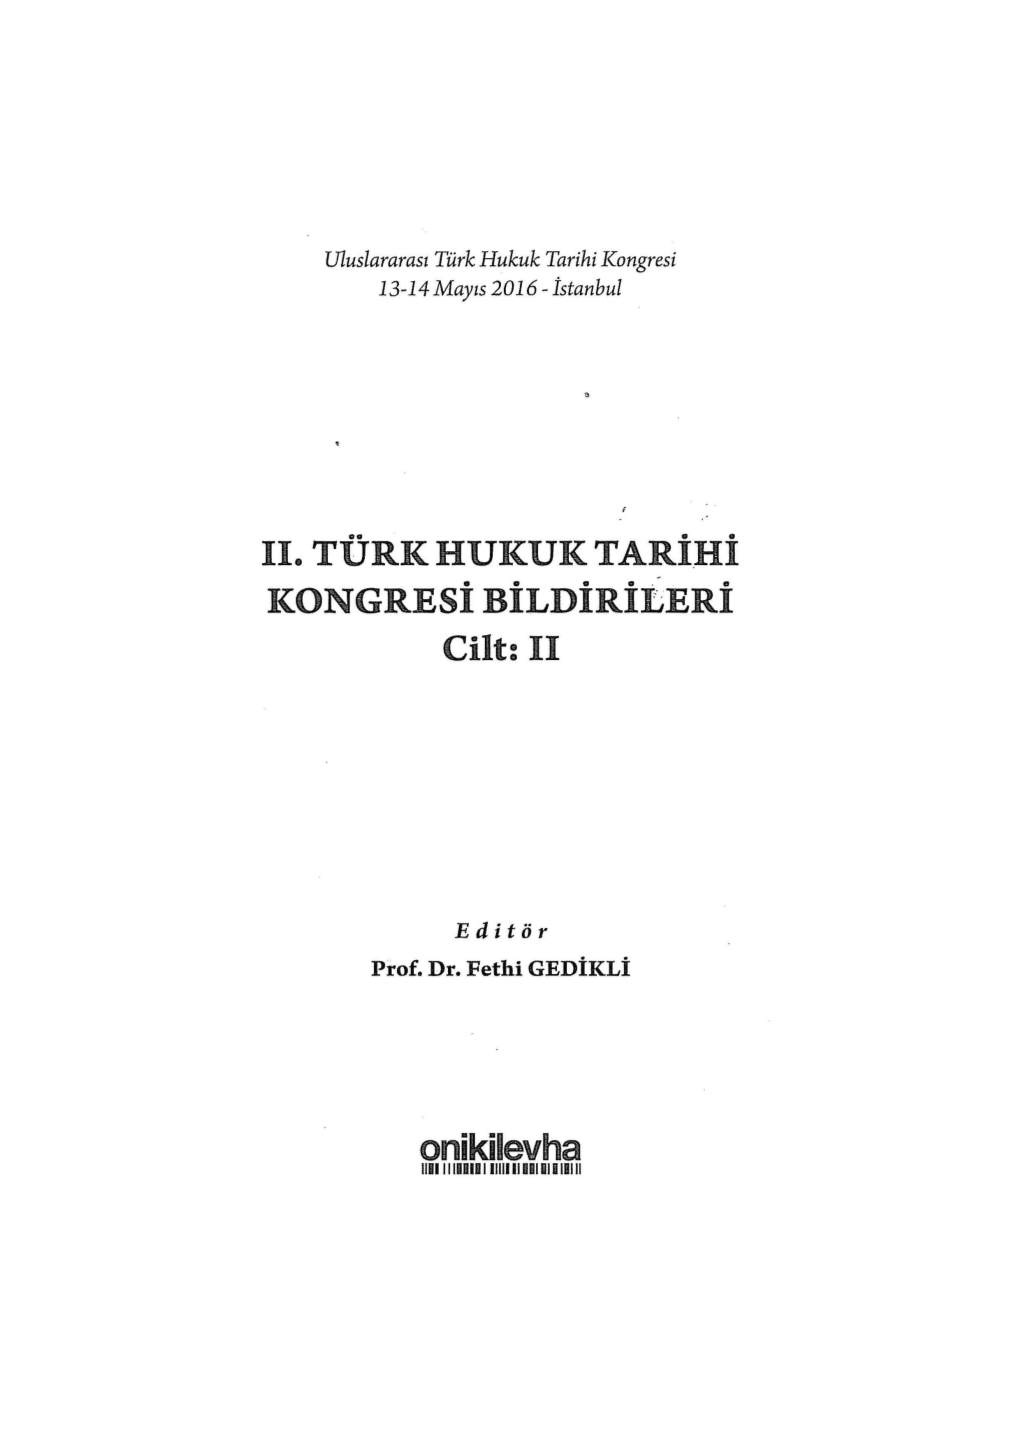 II. TURK HUKUK Tarihi Kongresi Bildirileri Cilt: II Onikilevha